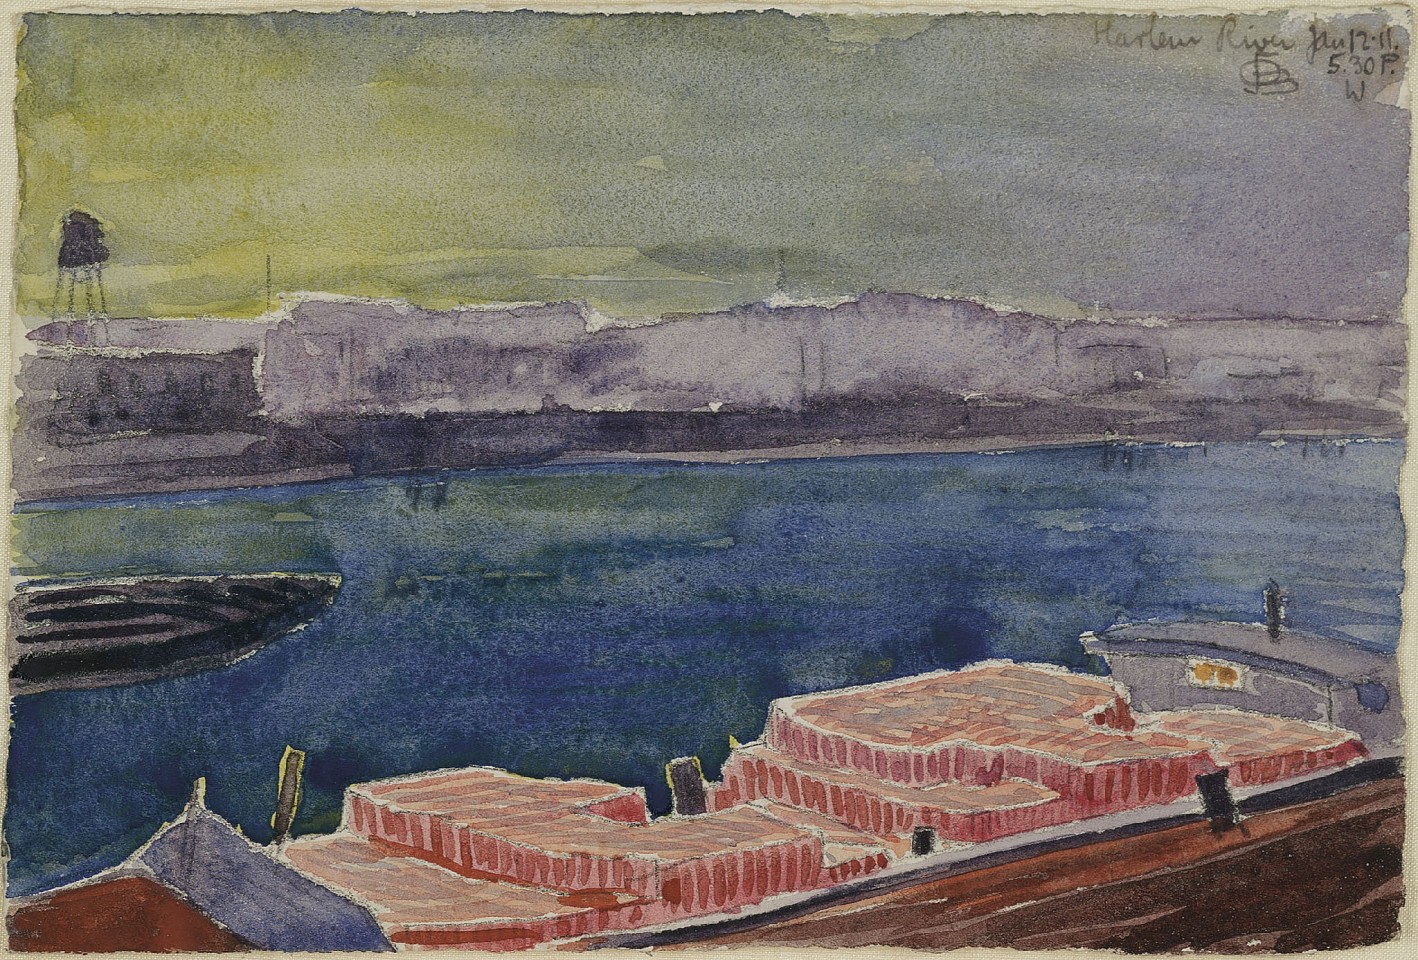 Oscar Bluemner, Harlem River, 5:30 PM W., 1911
watercolor on paper, 4 7/8 x 7 3/8 in. (12.4 x 18.7 cm)
OB190401